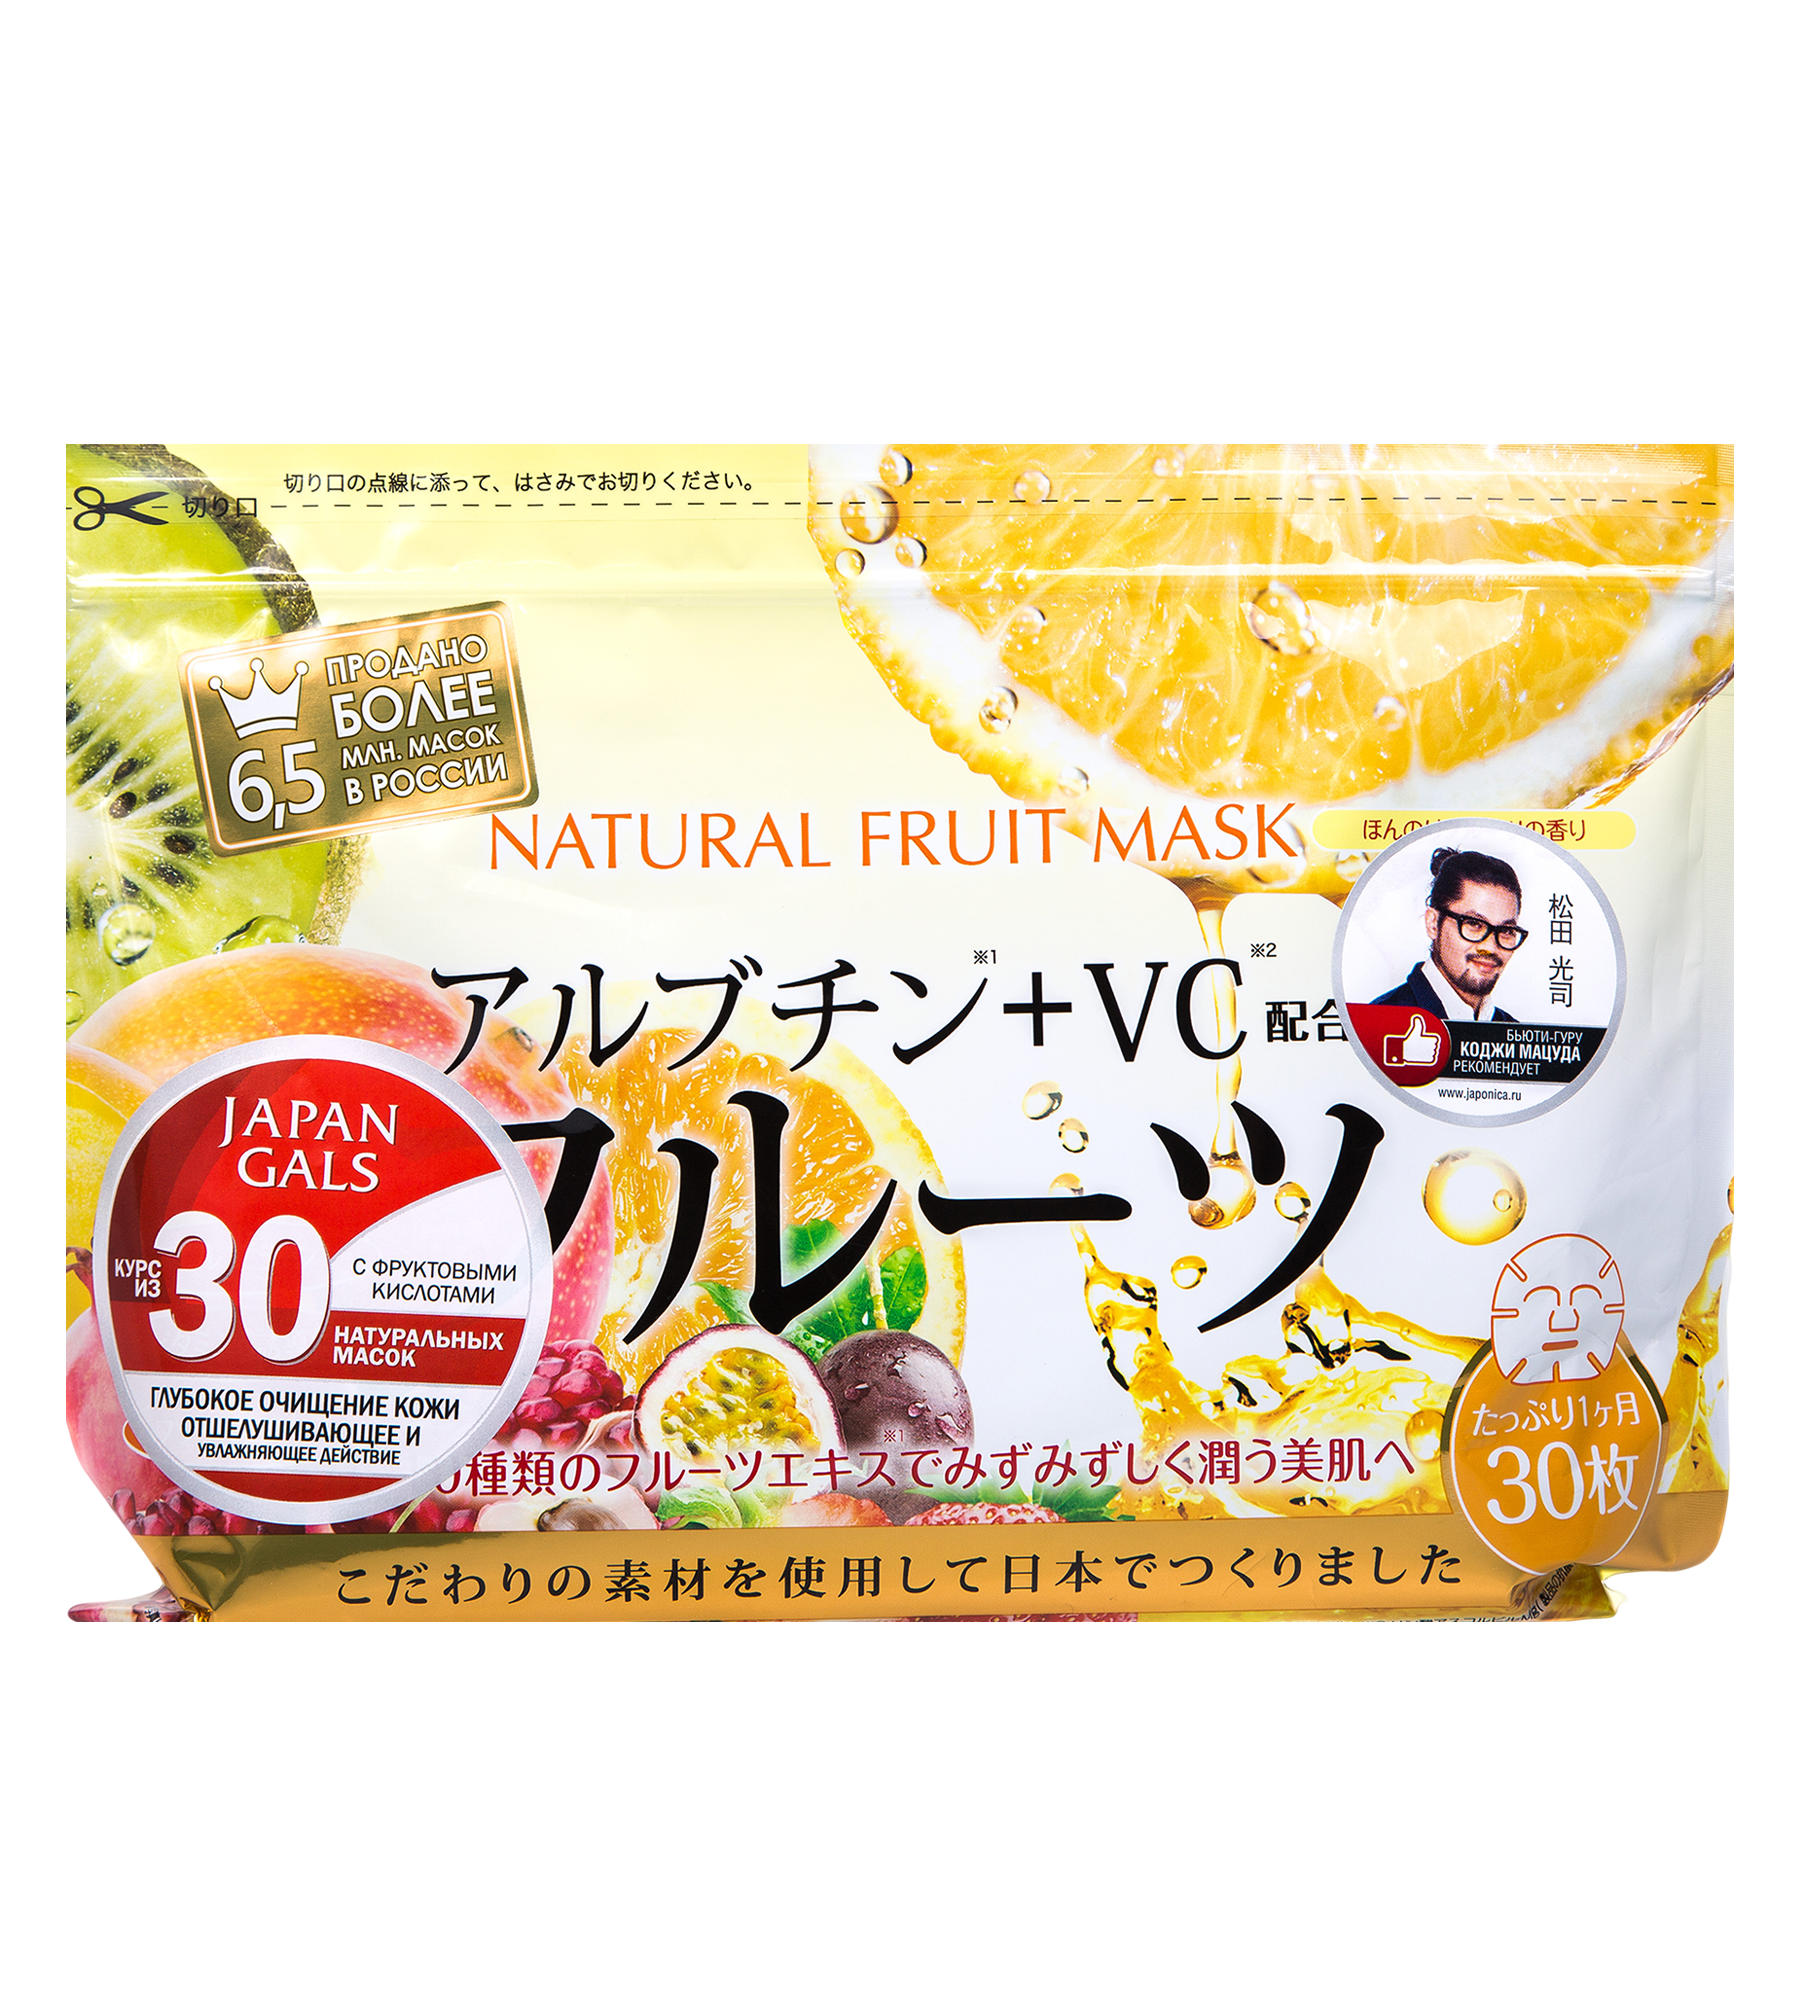 Japan Gals Natural Fruit натуральные маски для лица с фруктовыми кислотами, 30*3мл